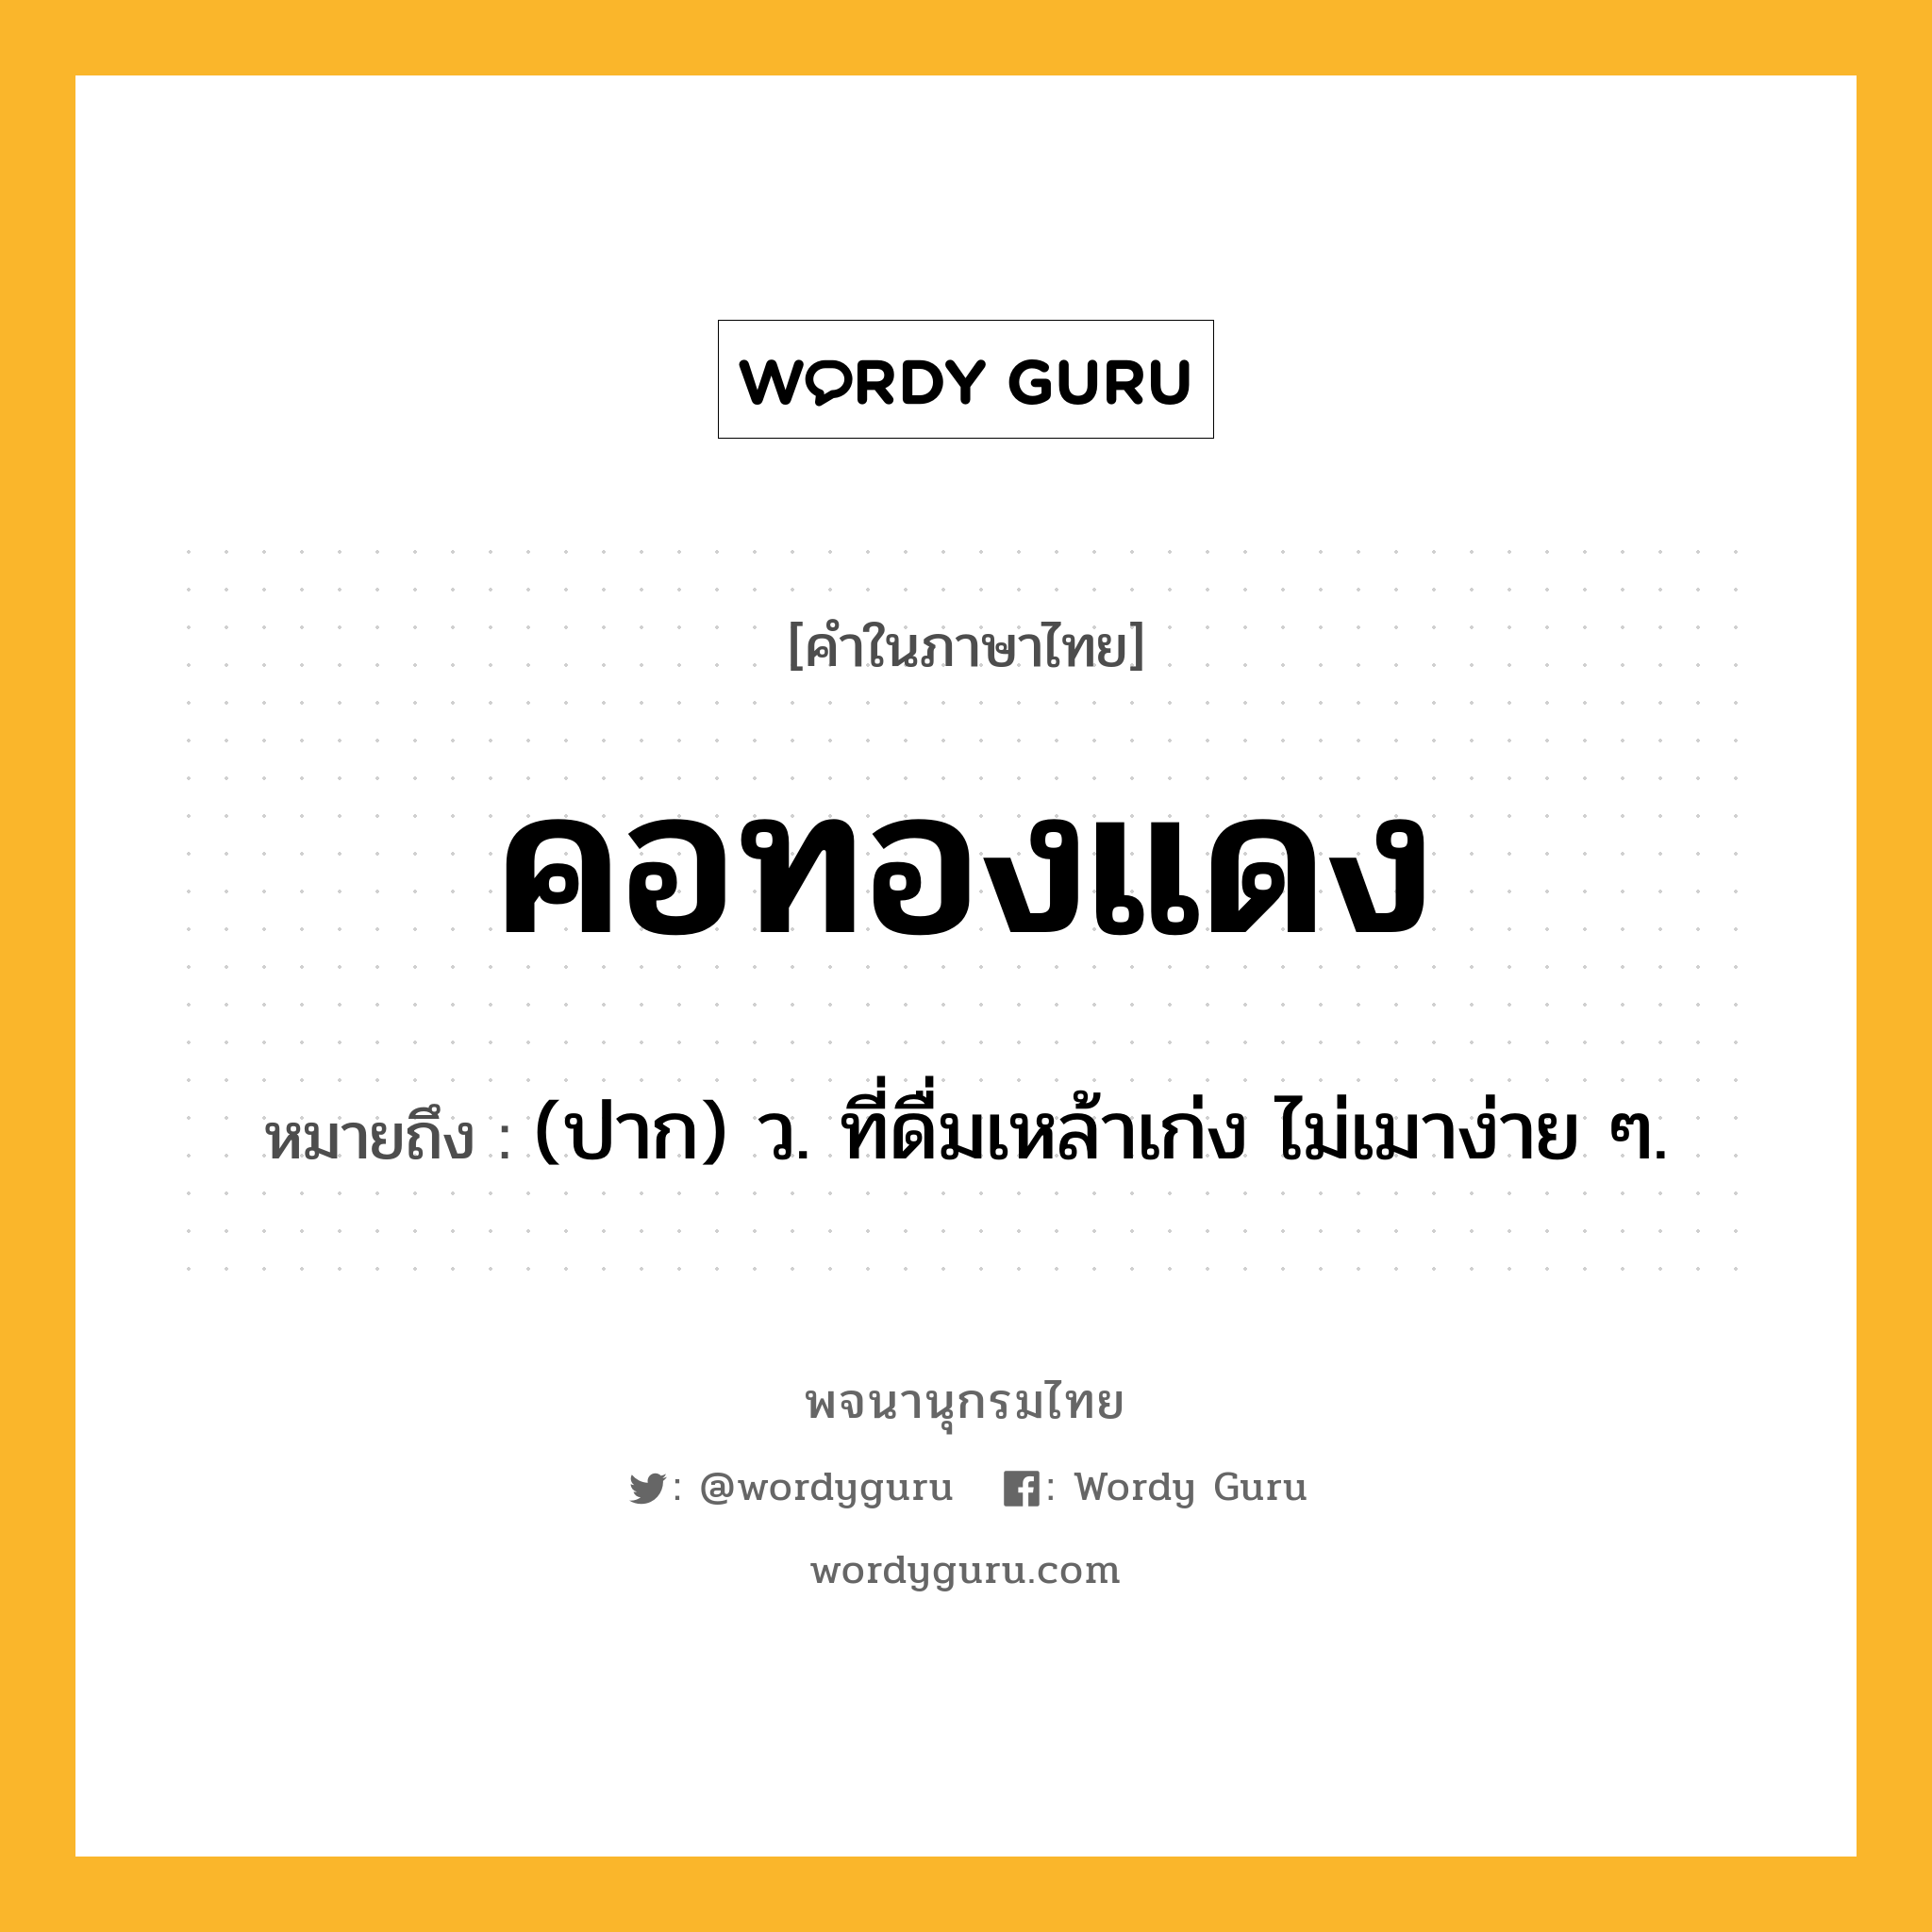 คอทองแดง ความหมาย หมายถึงอะไร?, คำในภาษาไทย คอทองแดง หมายถึง (ปาก) ว. ที่ดื่มเหล้าเก่ง ไม่เมาง่าย ๆ.